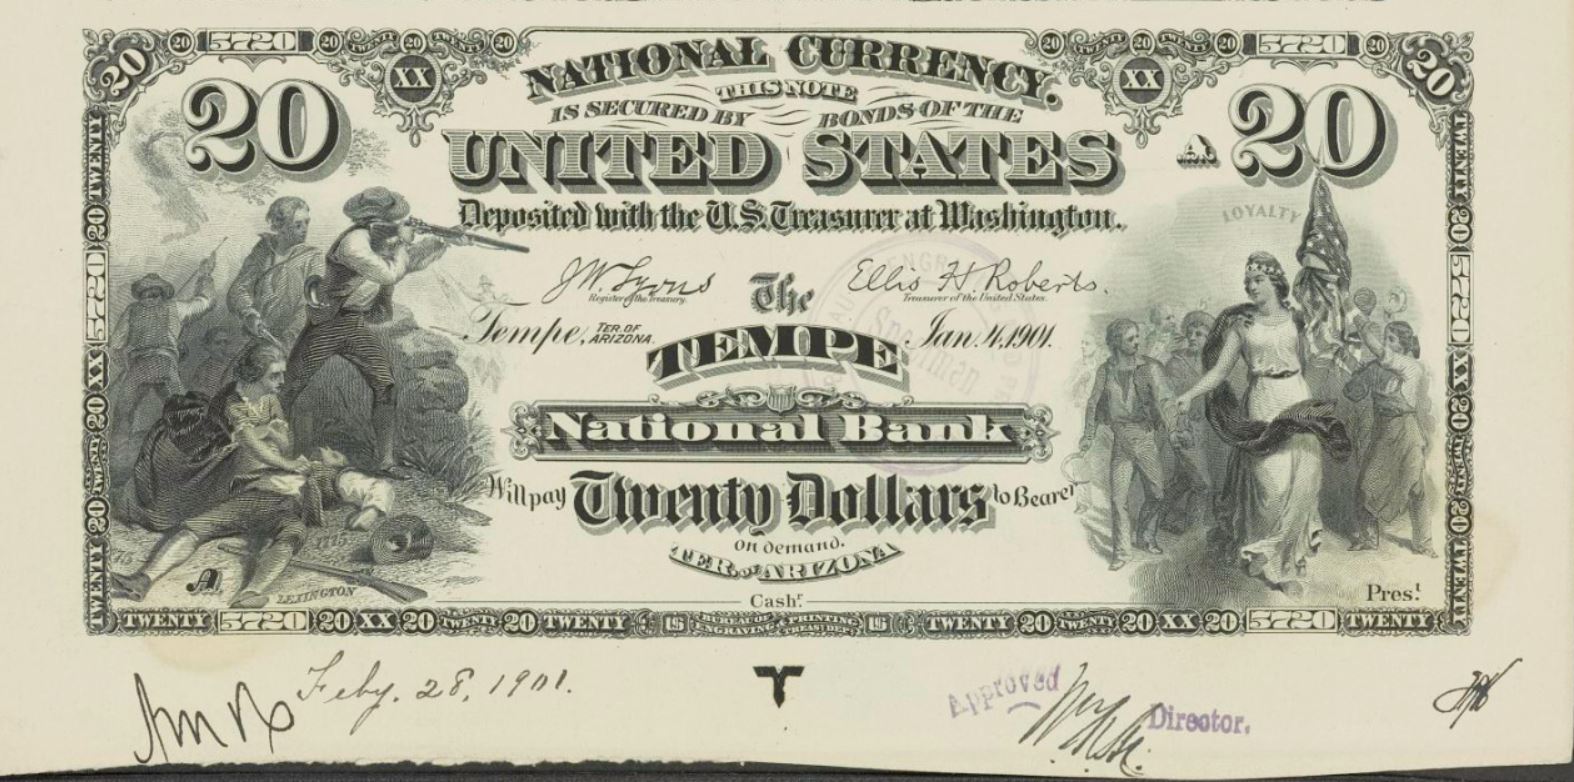 Arizona National Banknotes: 5720 The TEMPE National Bank